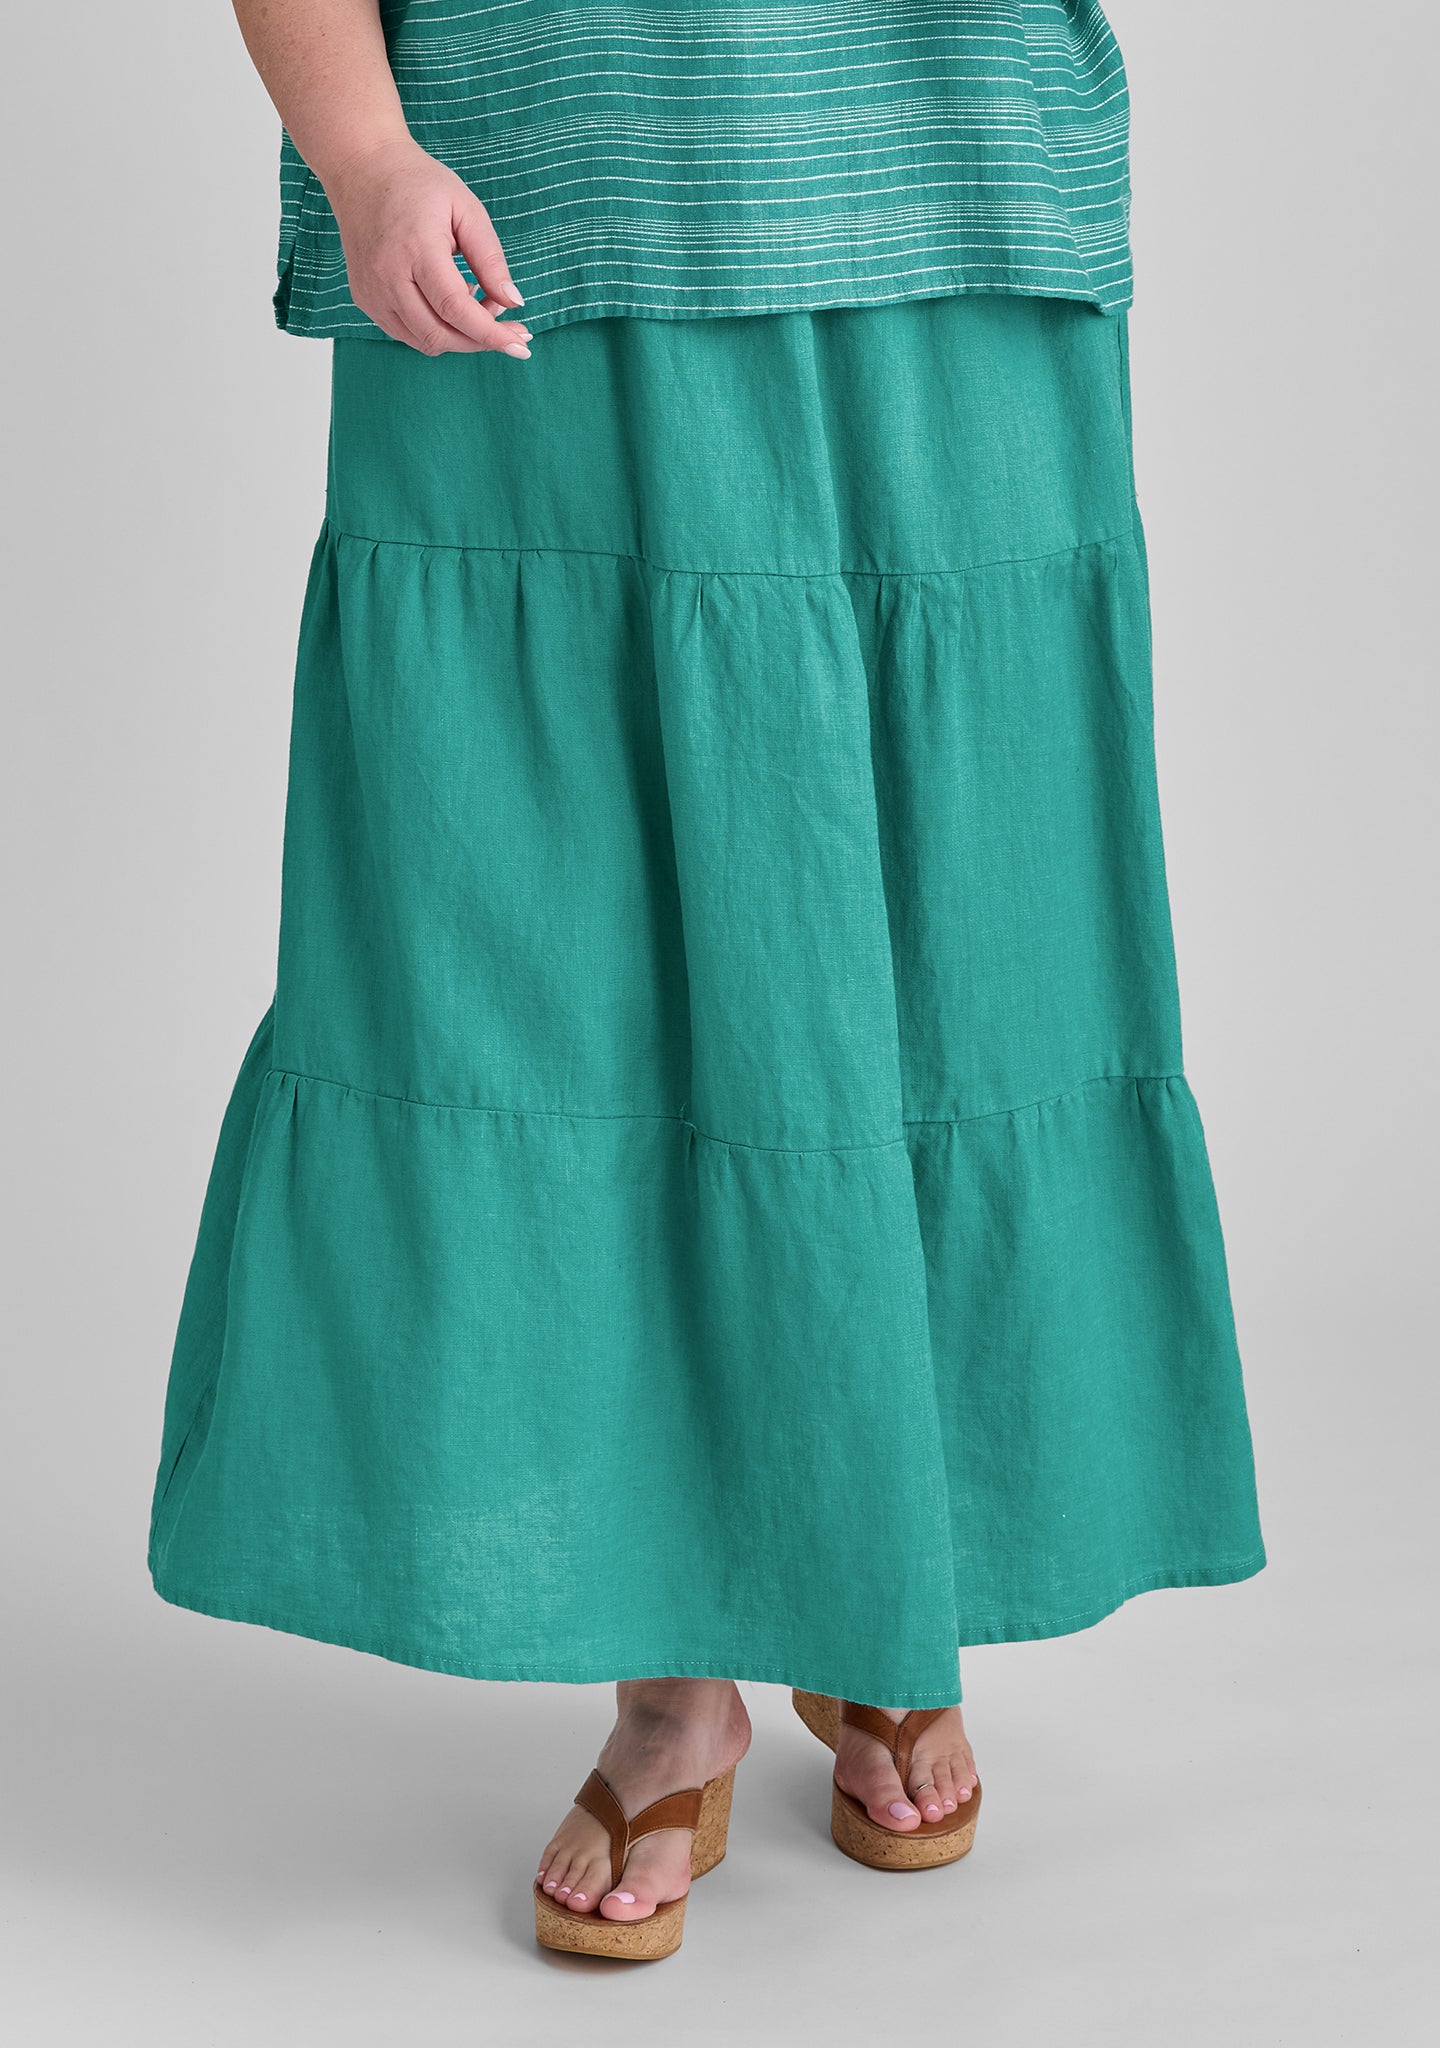 gaia skirt linen maxi skirt green